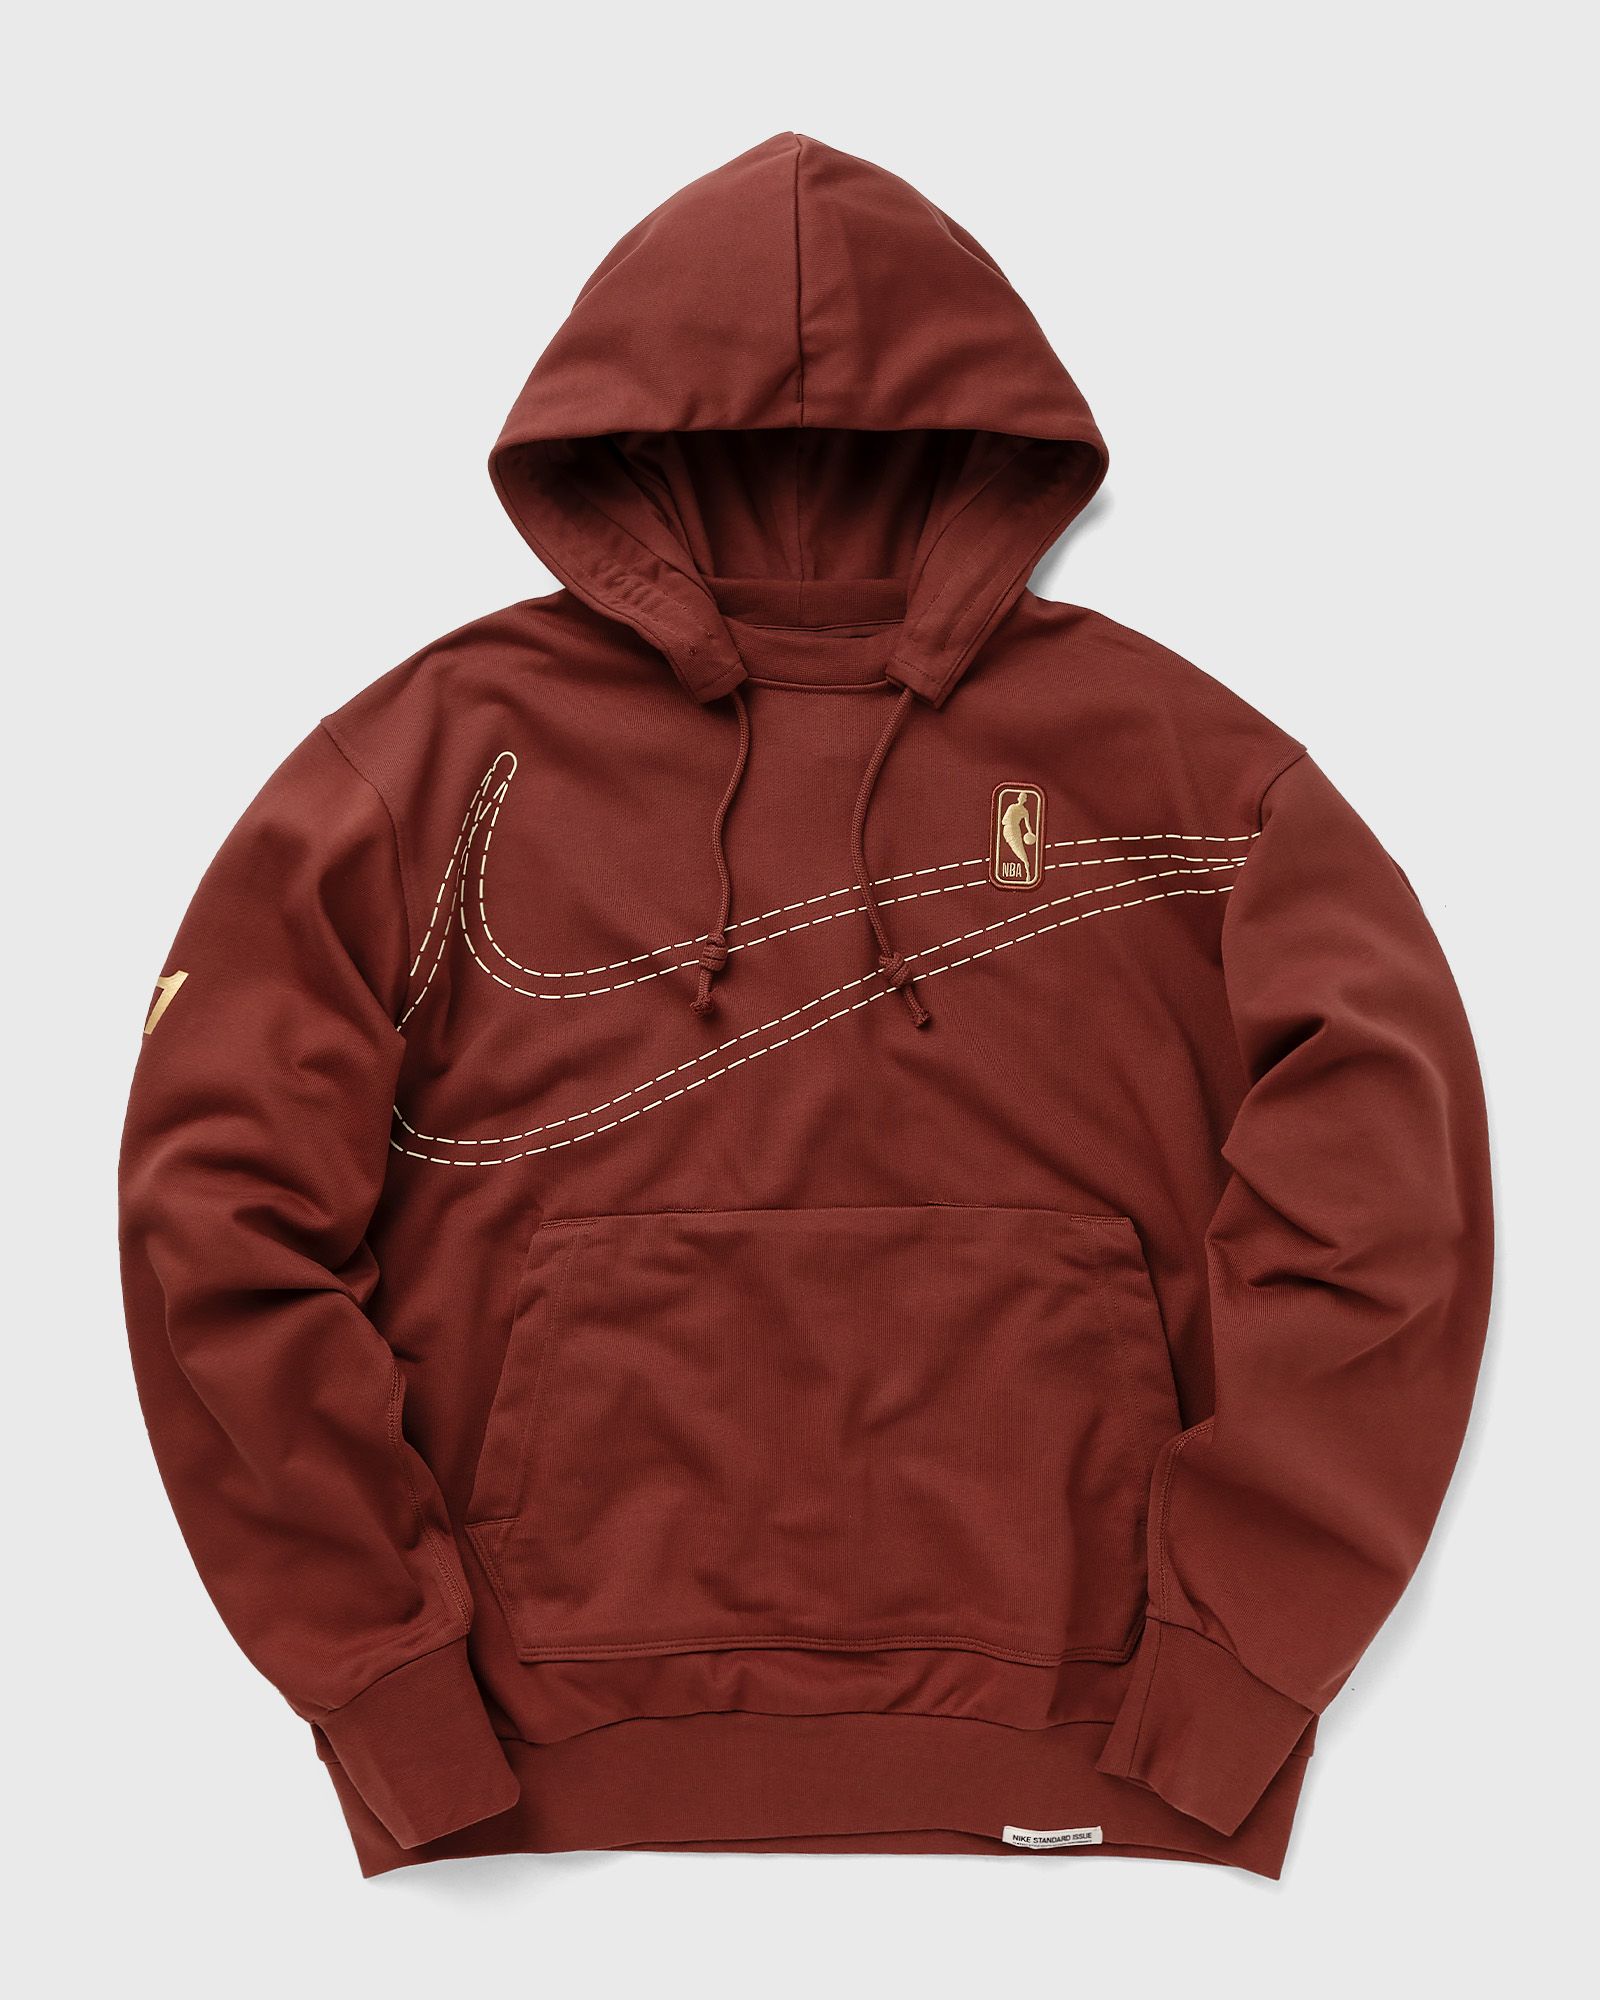 Nike - team 31 standard issue hoodie men hoodies red in größe:xl